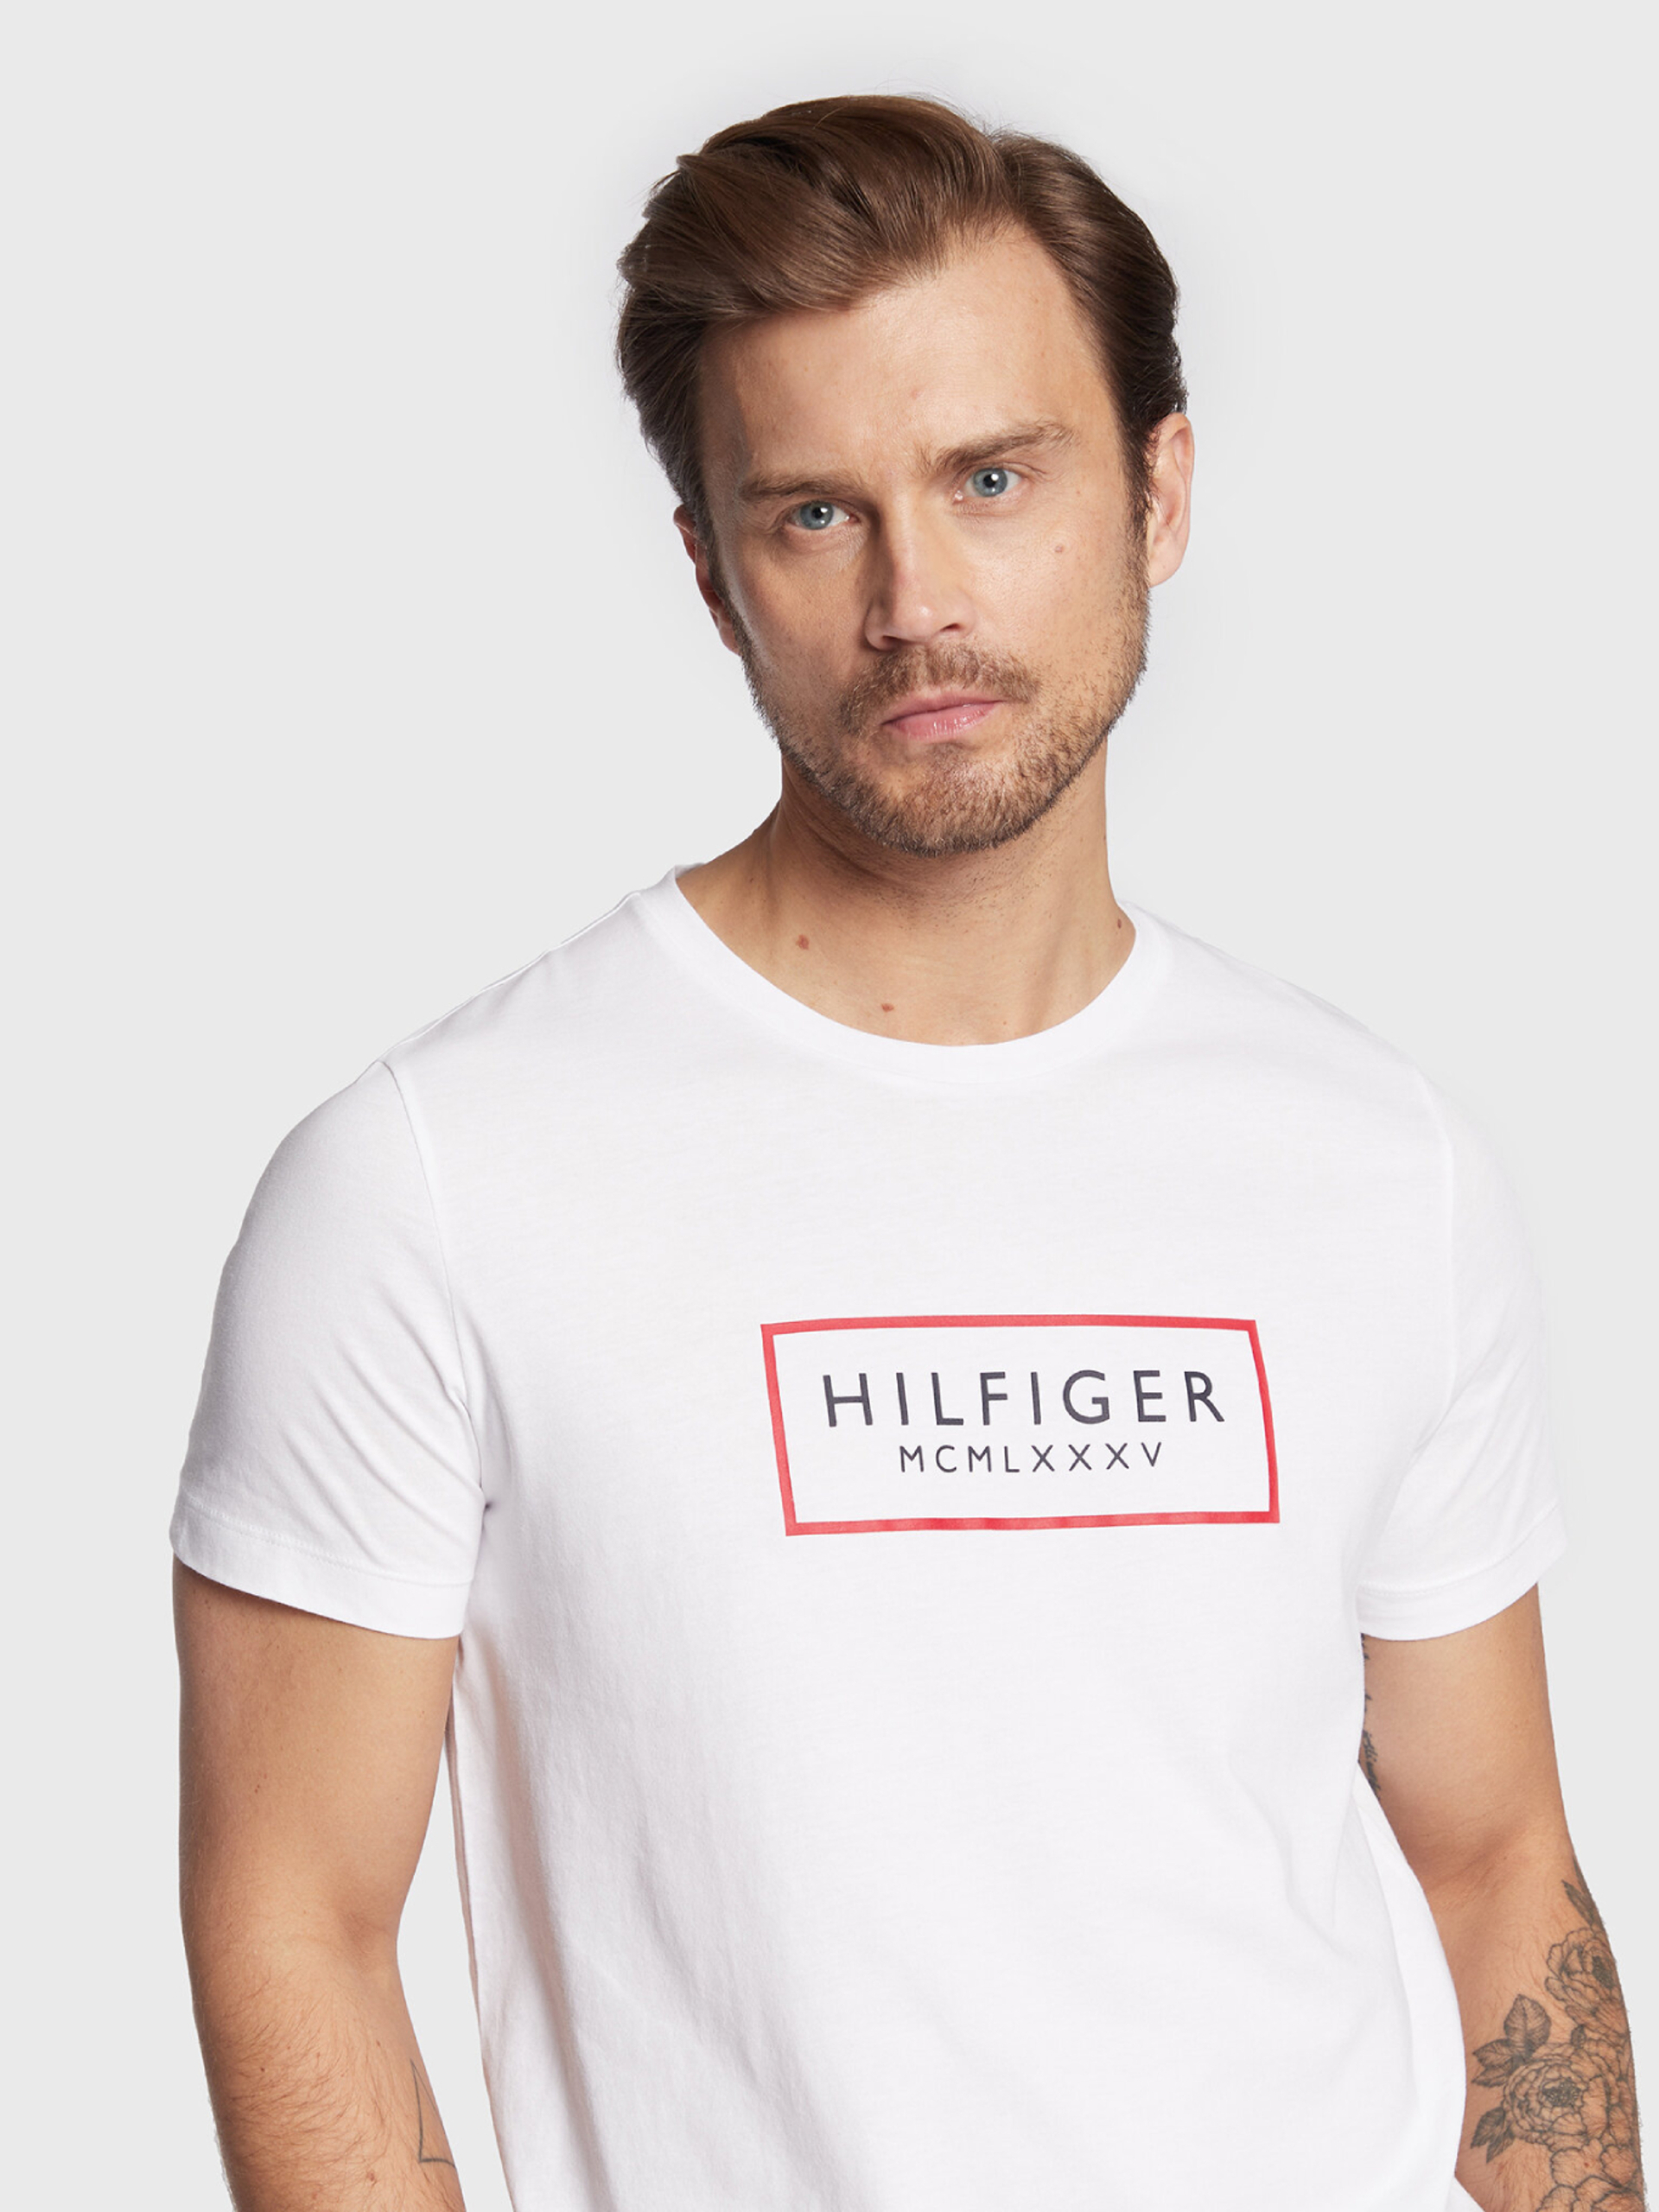 Tommy Hilfiger pánské bílé tričko - L (YBR)